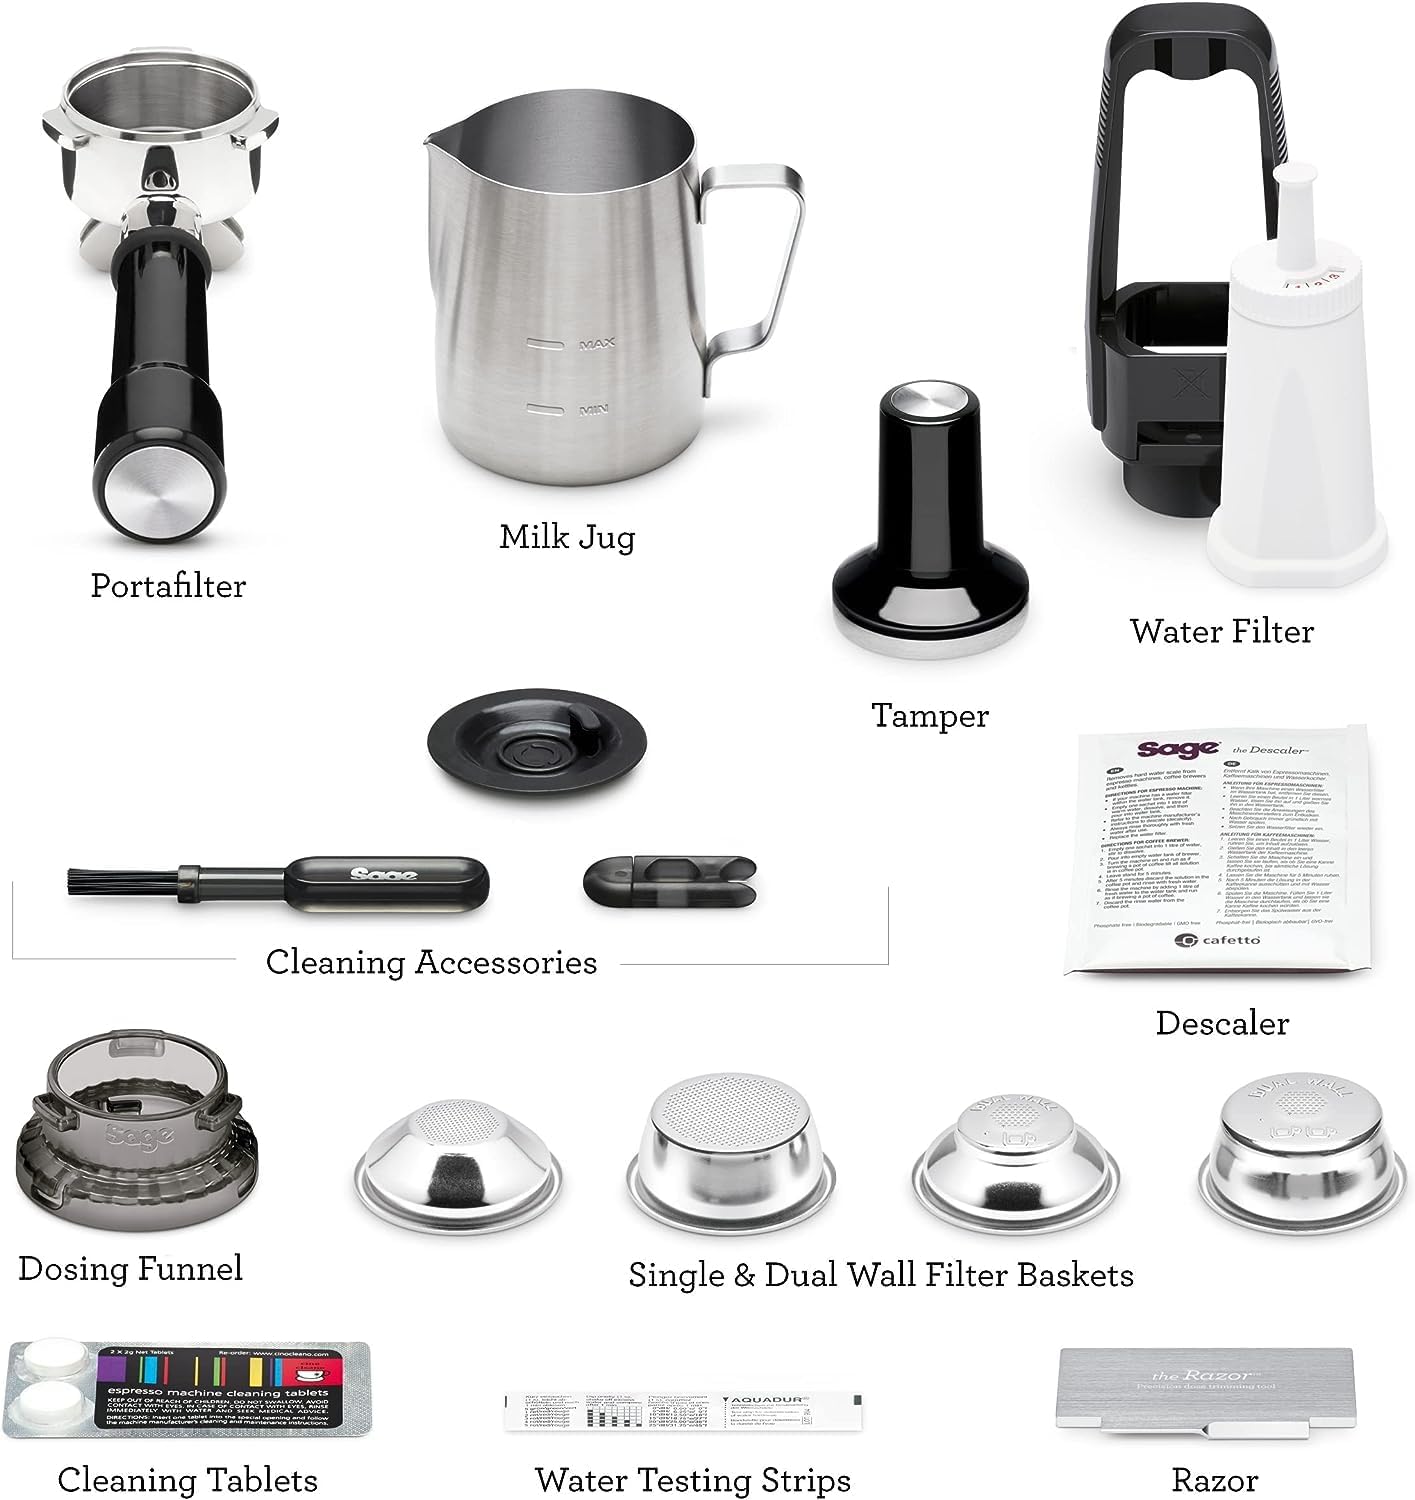 Sage Appliances The Barista Touch Espresso Machine